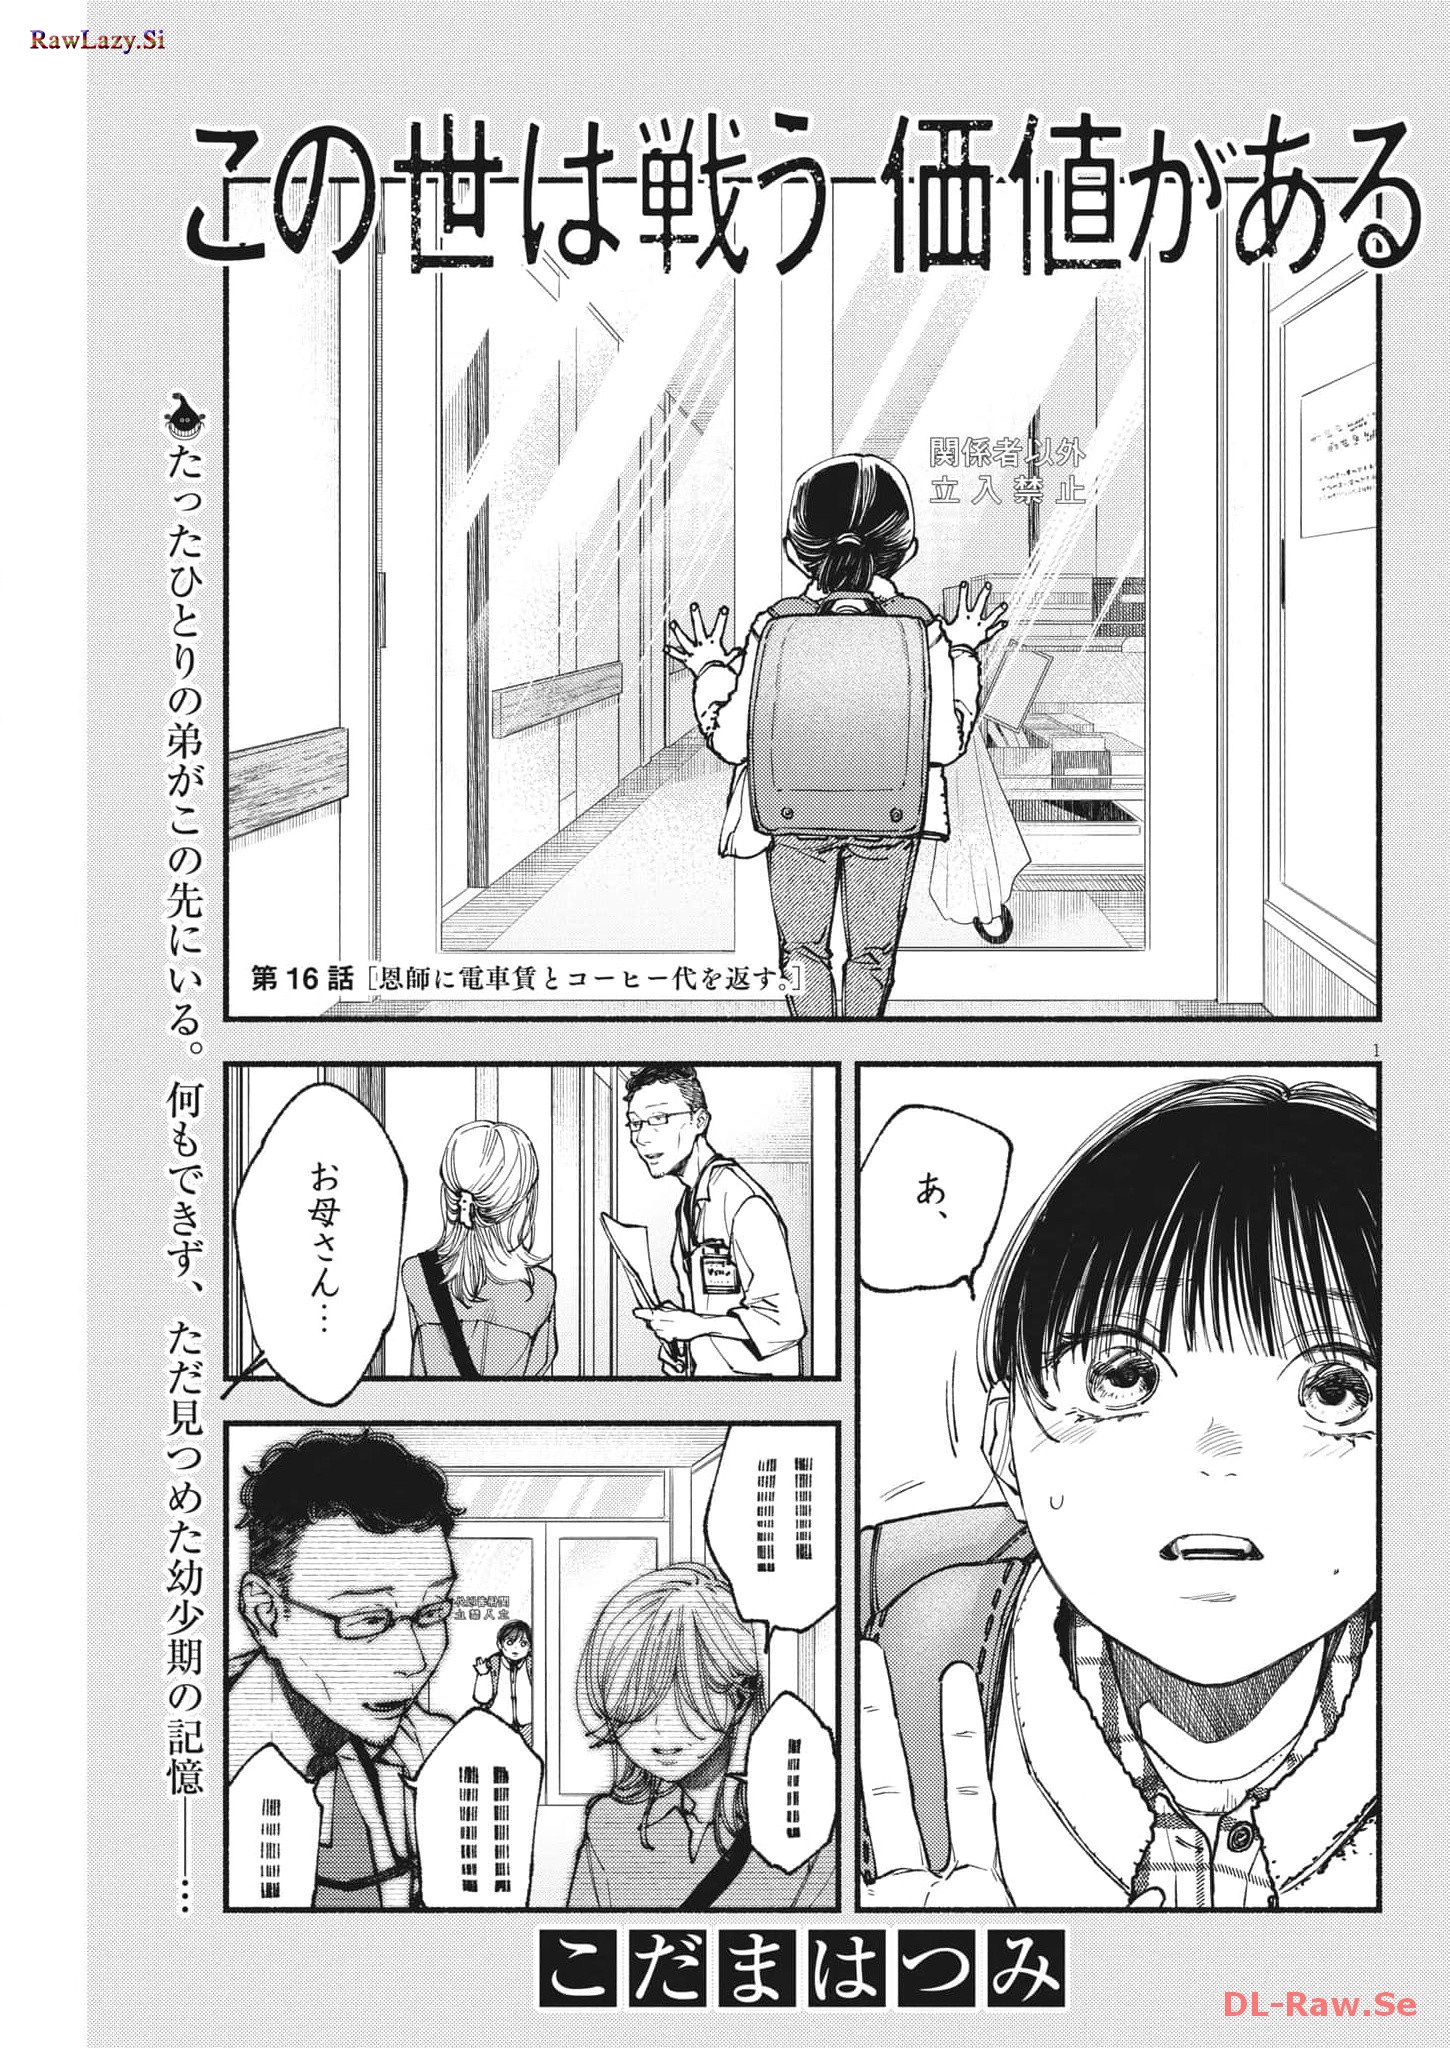 Konoyo wa Tatakau Kachi ga Aru  - Chapter 16 - Page 1